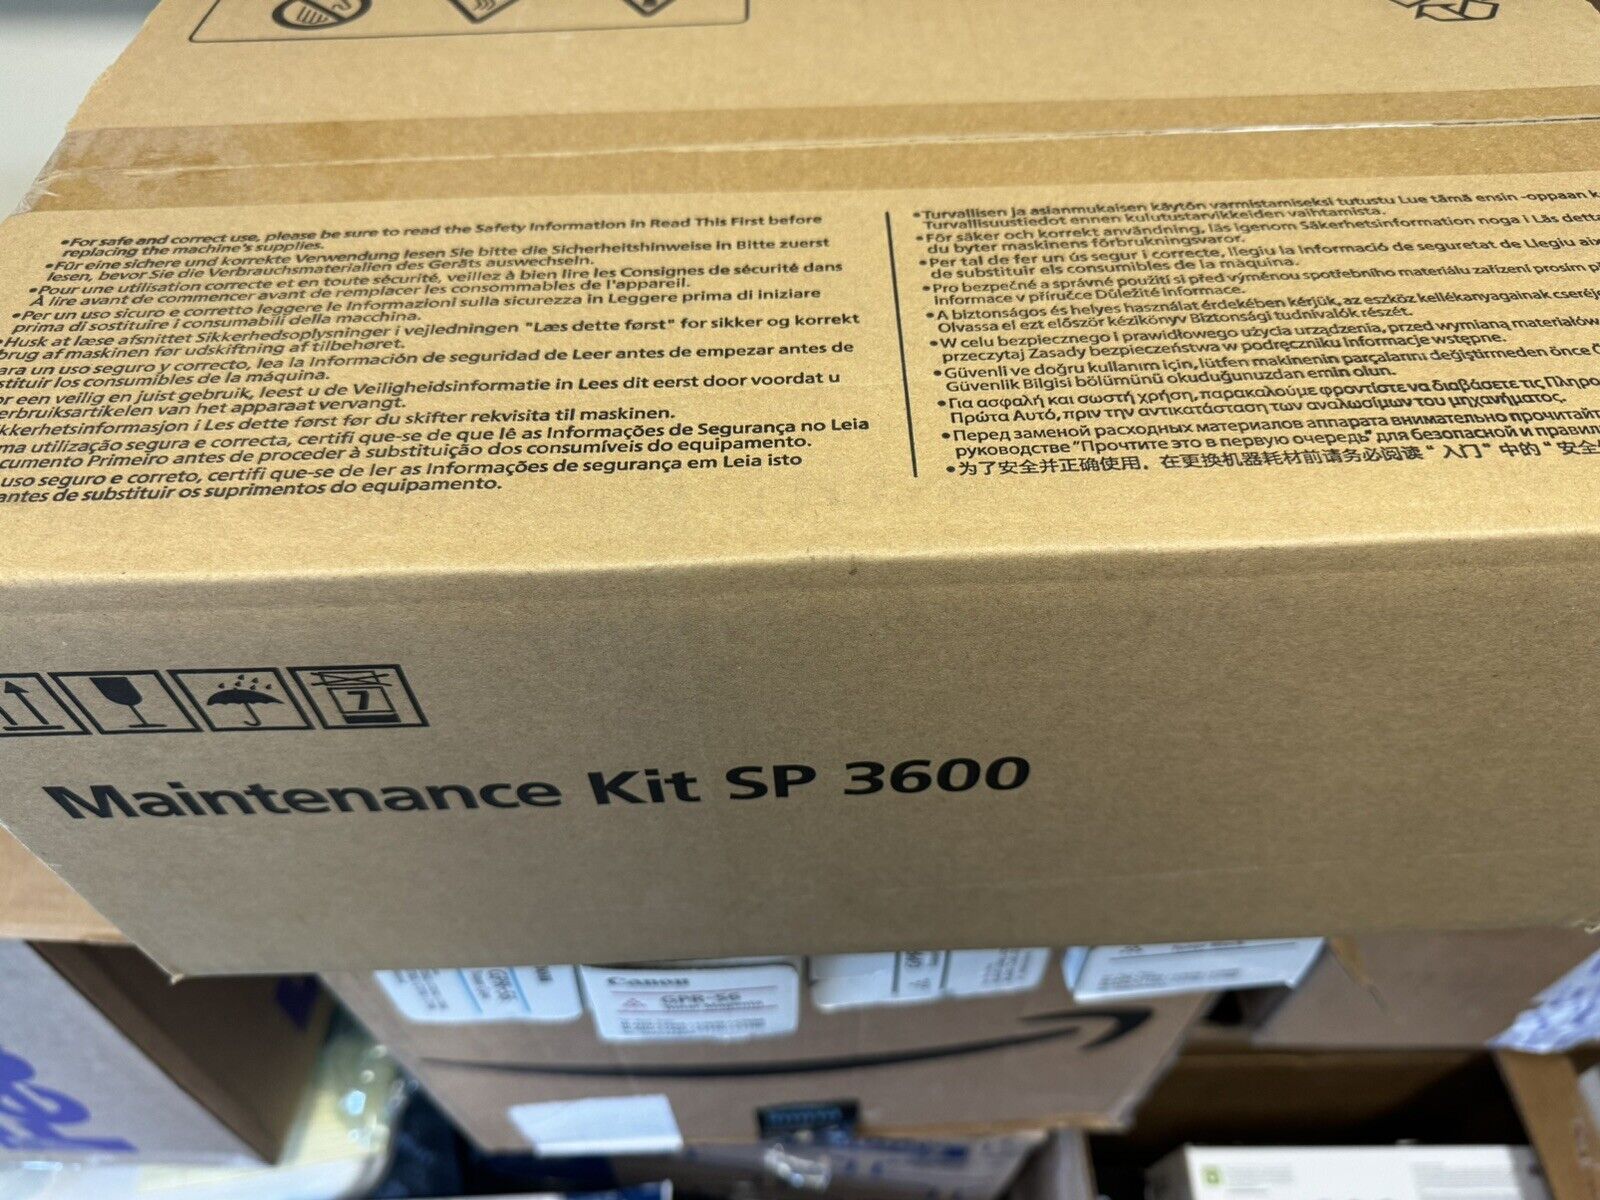 Genuine Ricoh SP 3600 Fuser Maintenance Kit 110/120V   407327 SEALED BOX